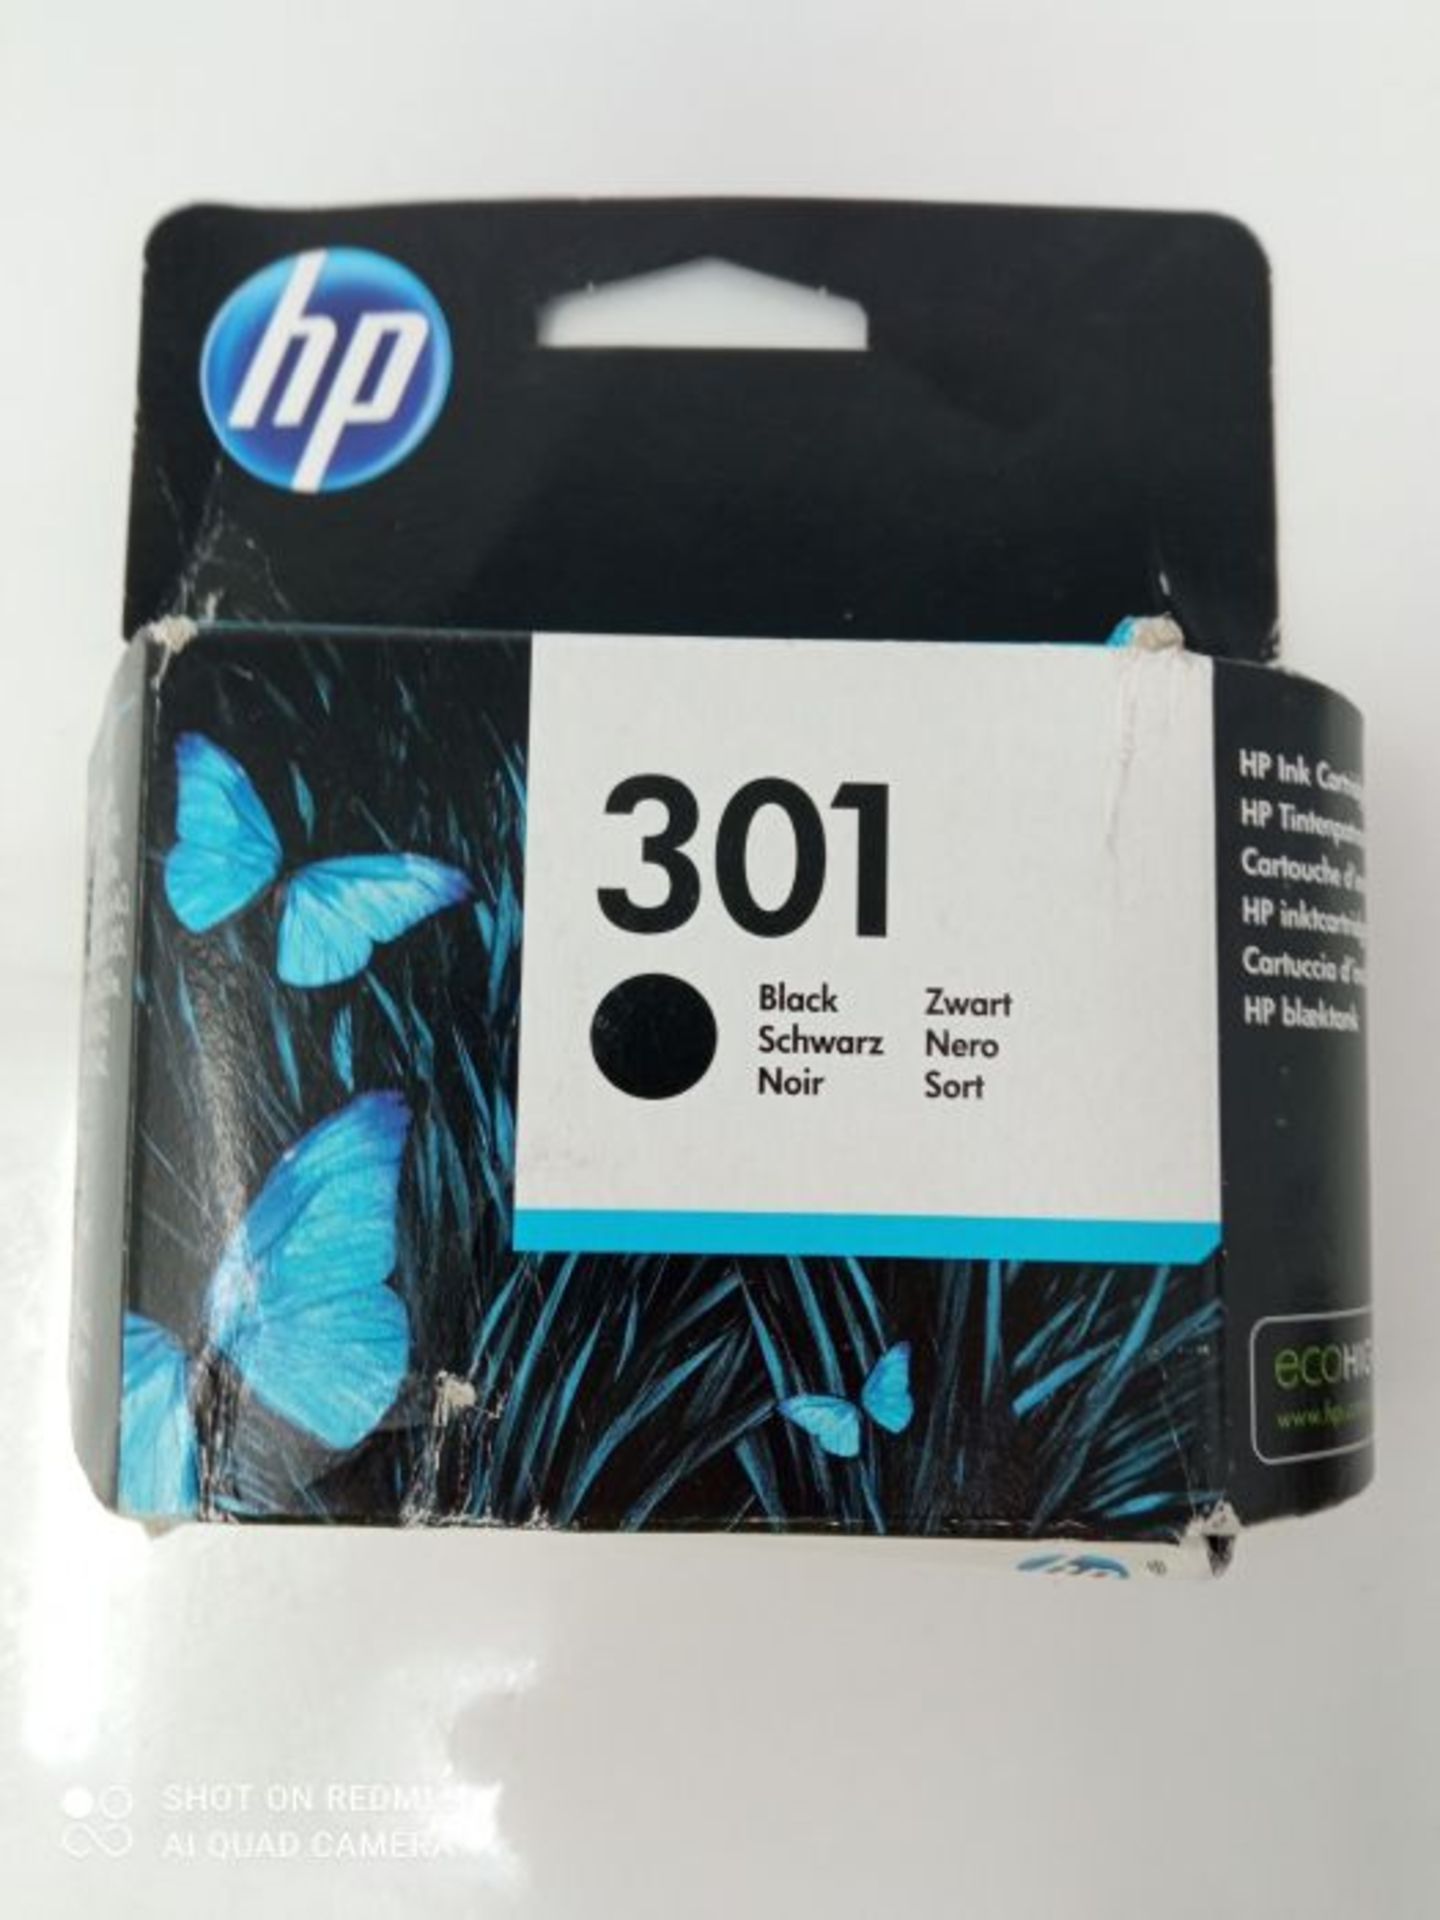 HP CH561EE 301 Original Ink Cartridge, Black, Single Pack - Image 2 of 3